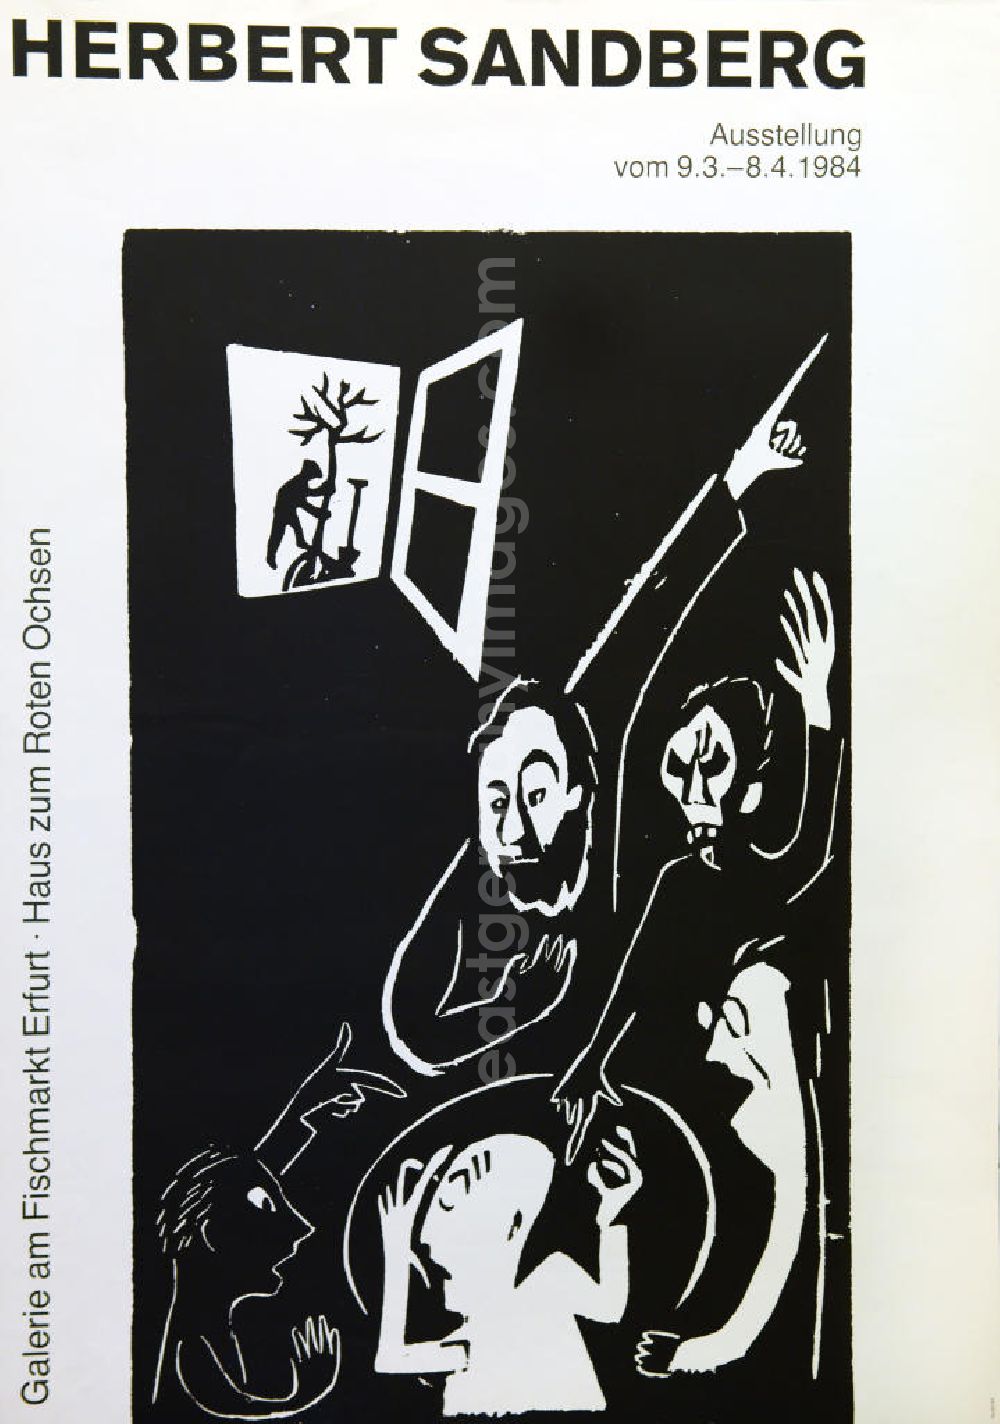 GDR image archive: Berlin - Plakat der Ausstellung Herbert Sandberg vom 09.03.-08.04.1984 Galerie am Fischmarkt Erfurt, Haus zum Roten Ochsen, 57,5x81,